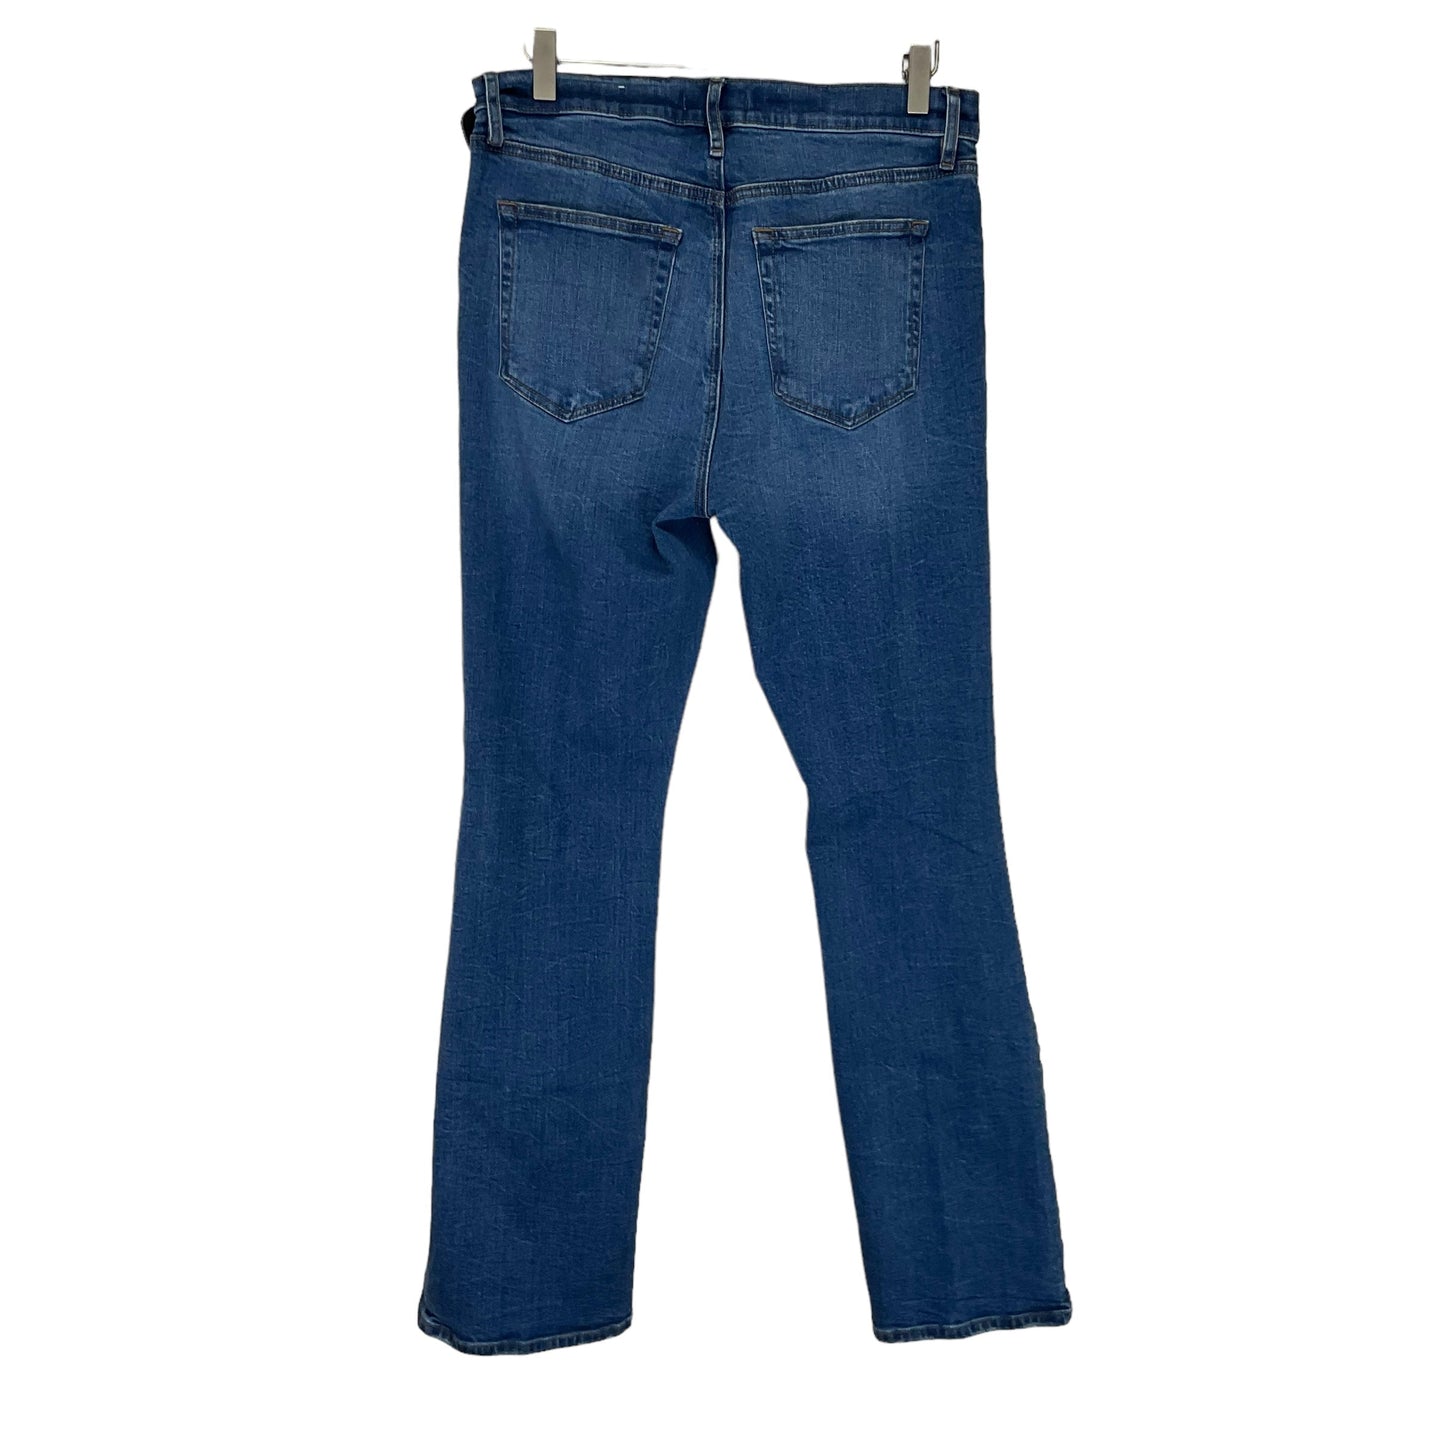 Blue Denim Jeans Boot Cut Loft, Size 10